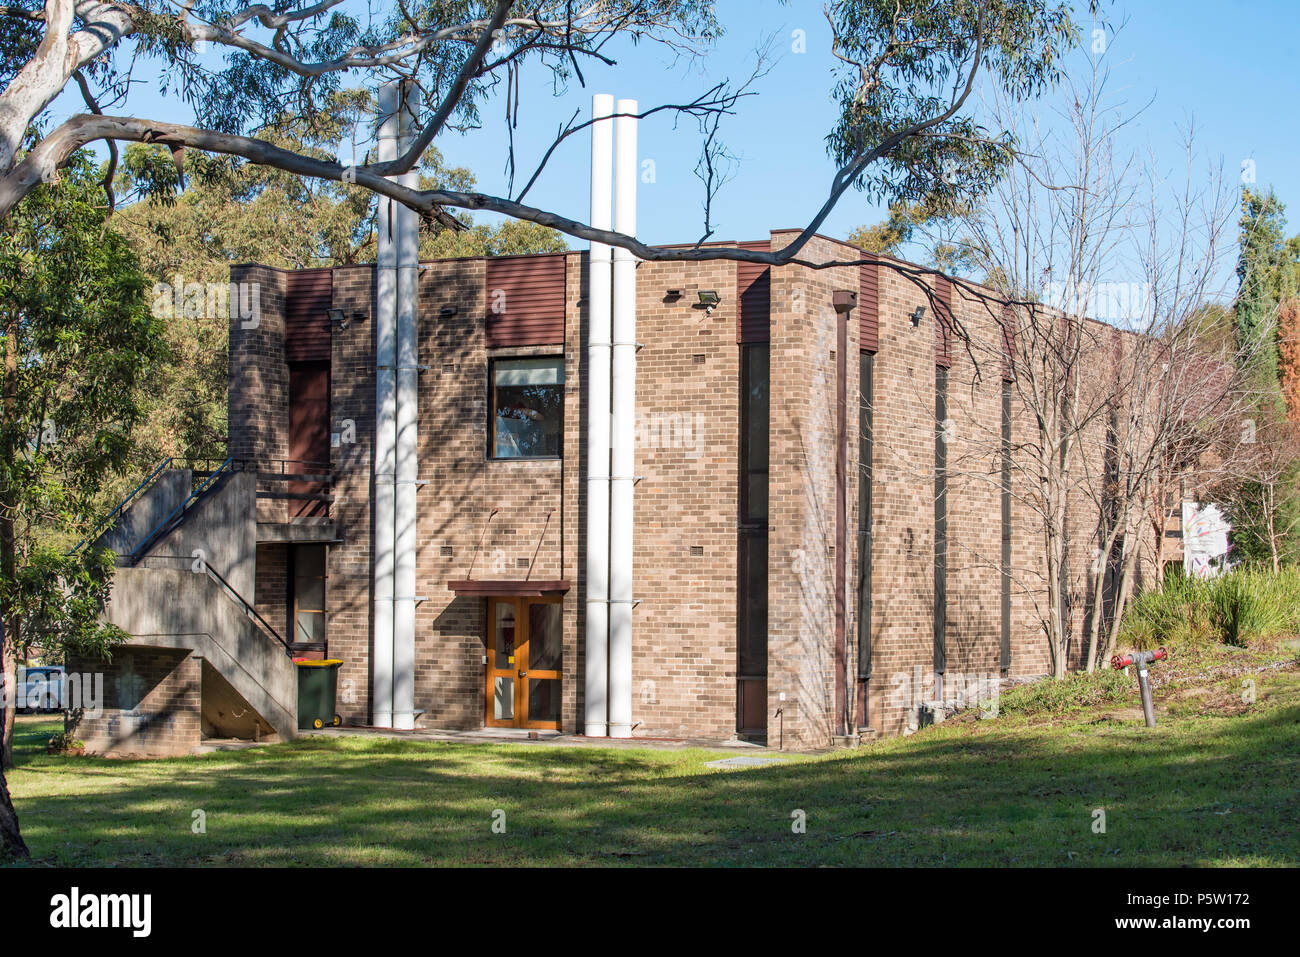 La fin des années 60 ou au début des années 70, la brique brutaliste moderniste immeuble de bureaux sur le patrimoine Grantham Estate dans sept Hill, Sydney Australie Banque D'Images